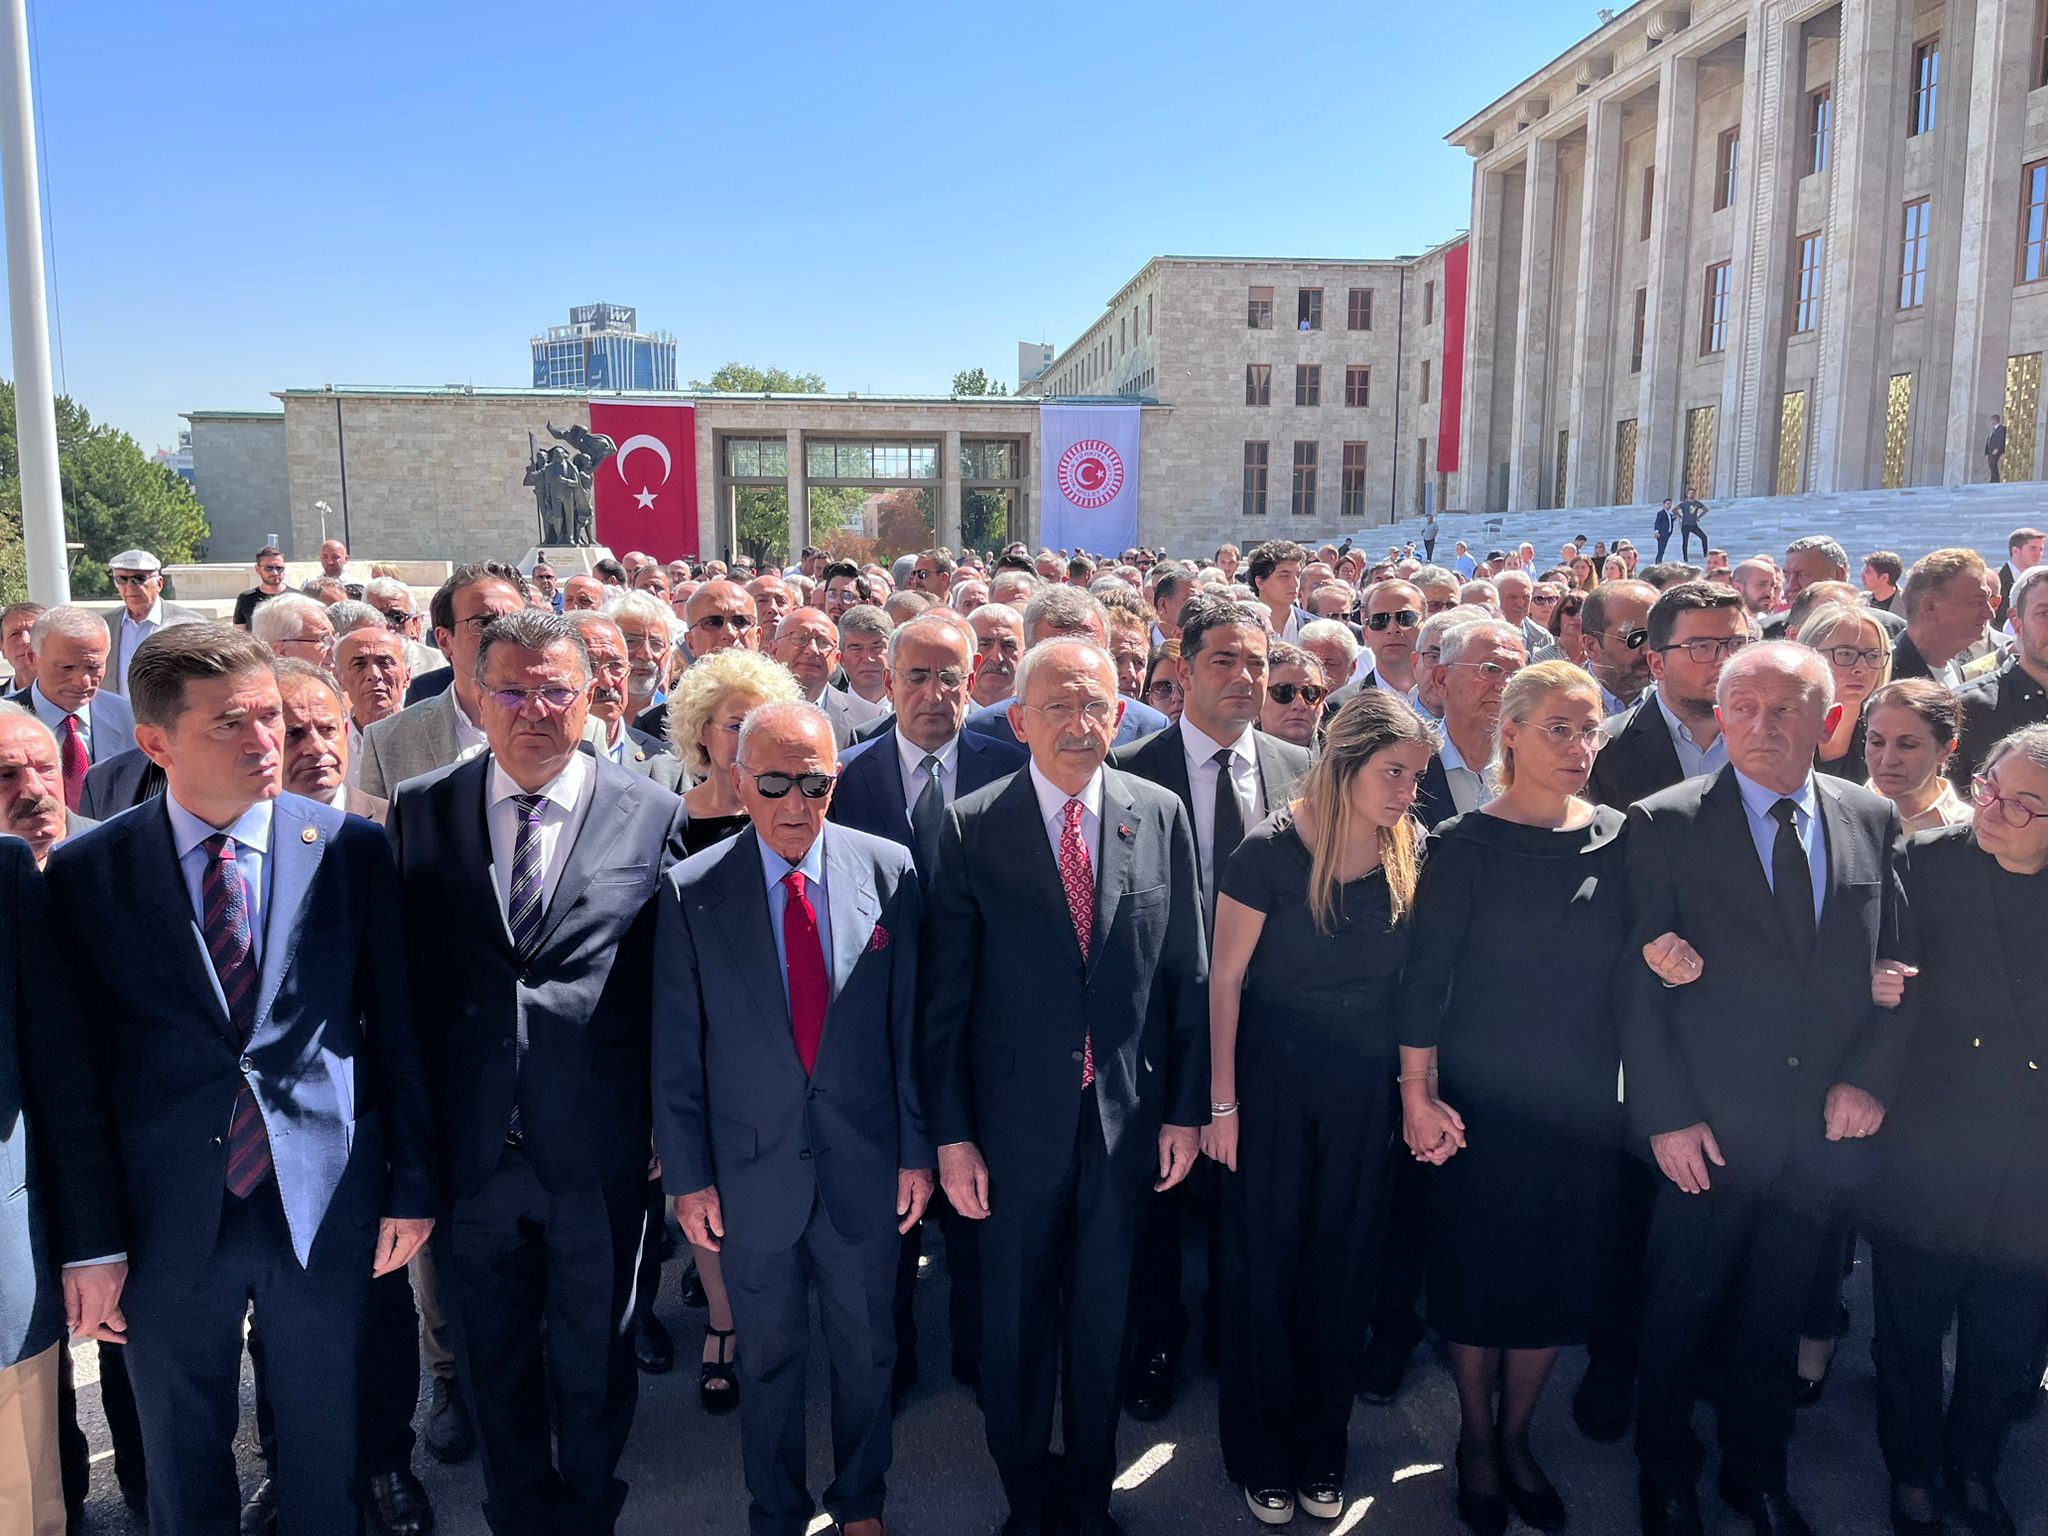 Eski Trabzon milletvekili Pekşen için TBMM'de tören